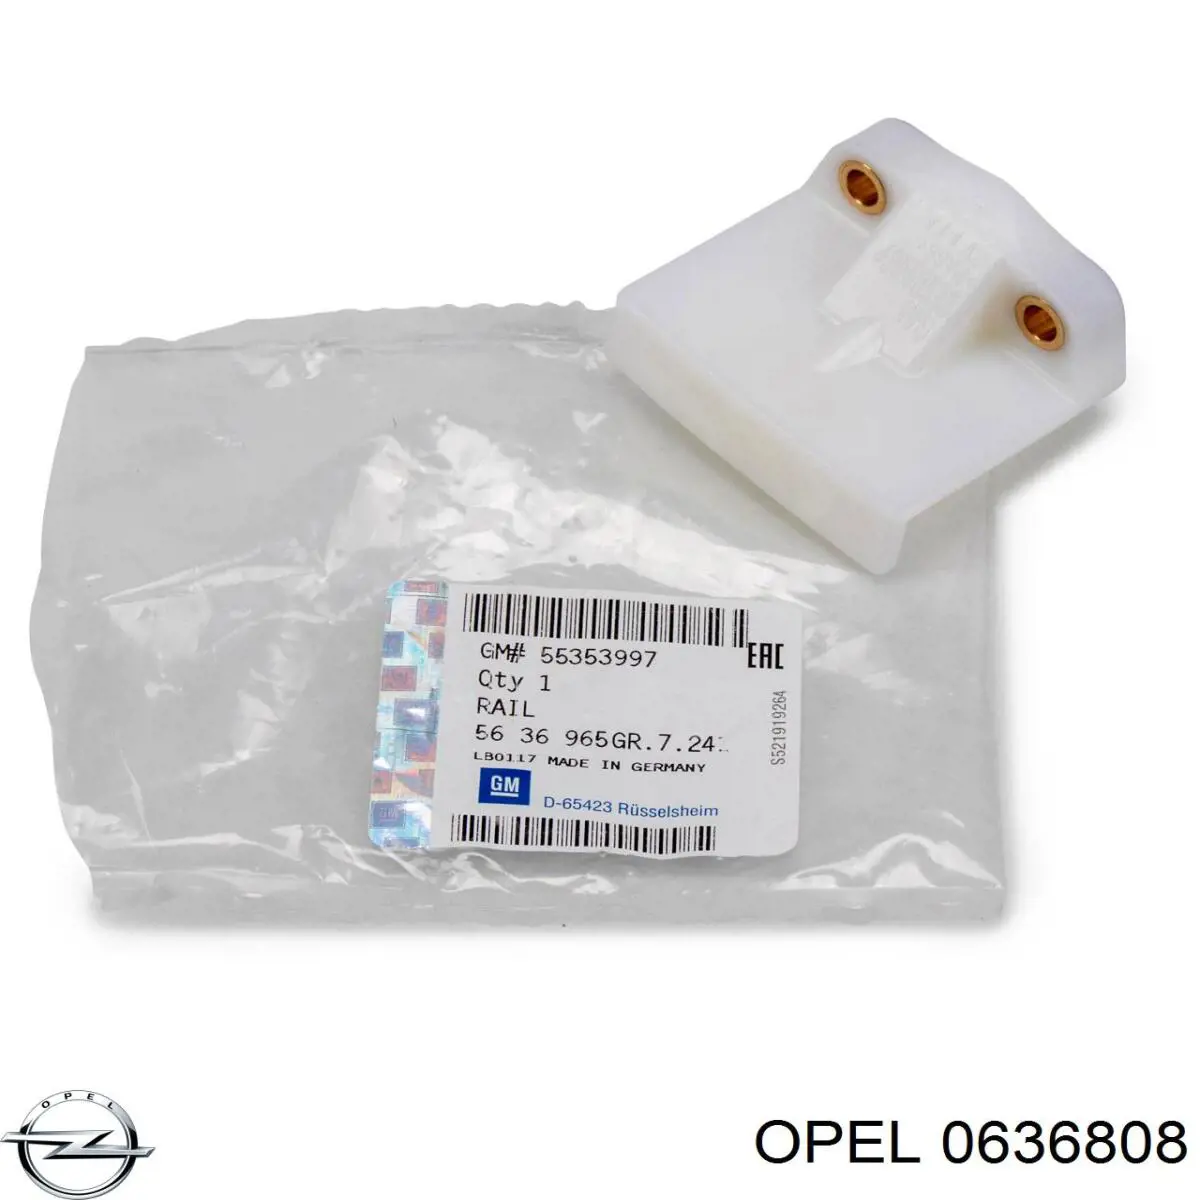 0636808 Opel заспокоювач ланцюга грм, верхній гбц